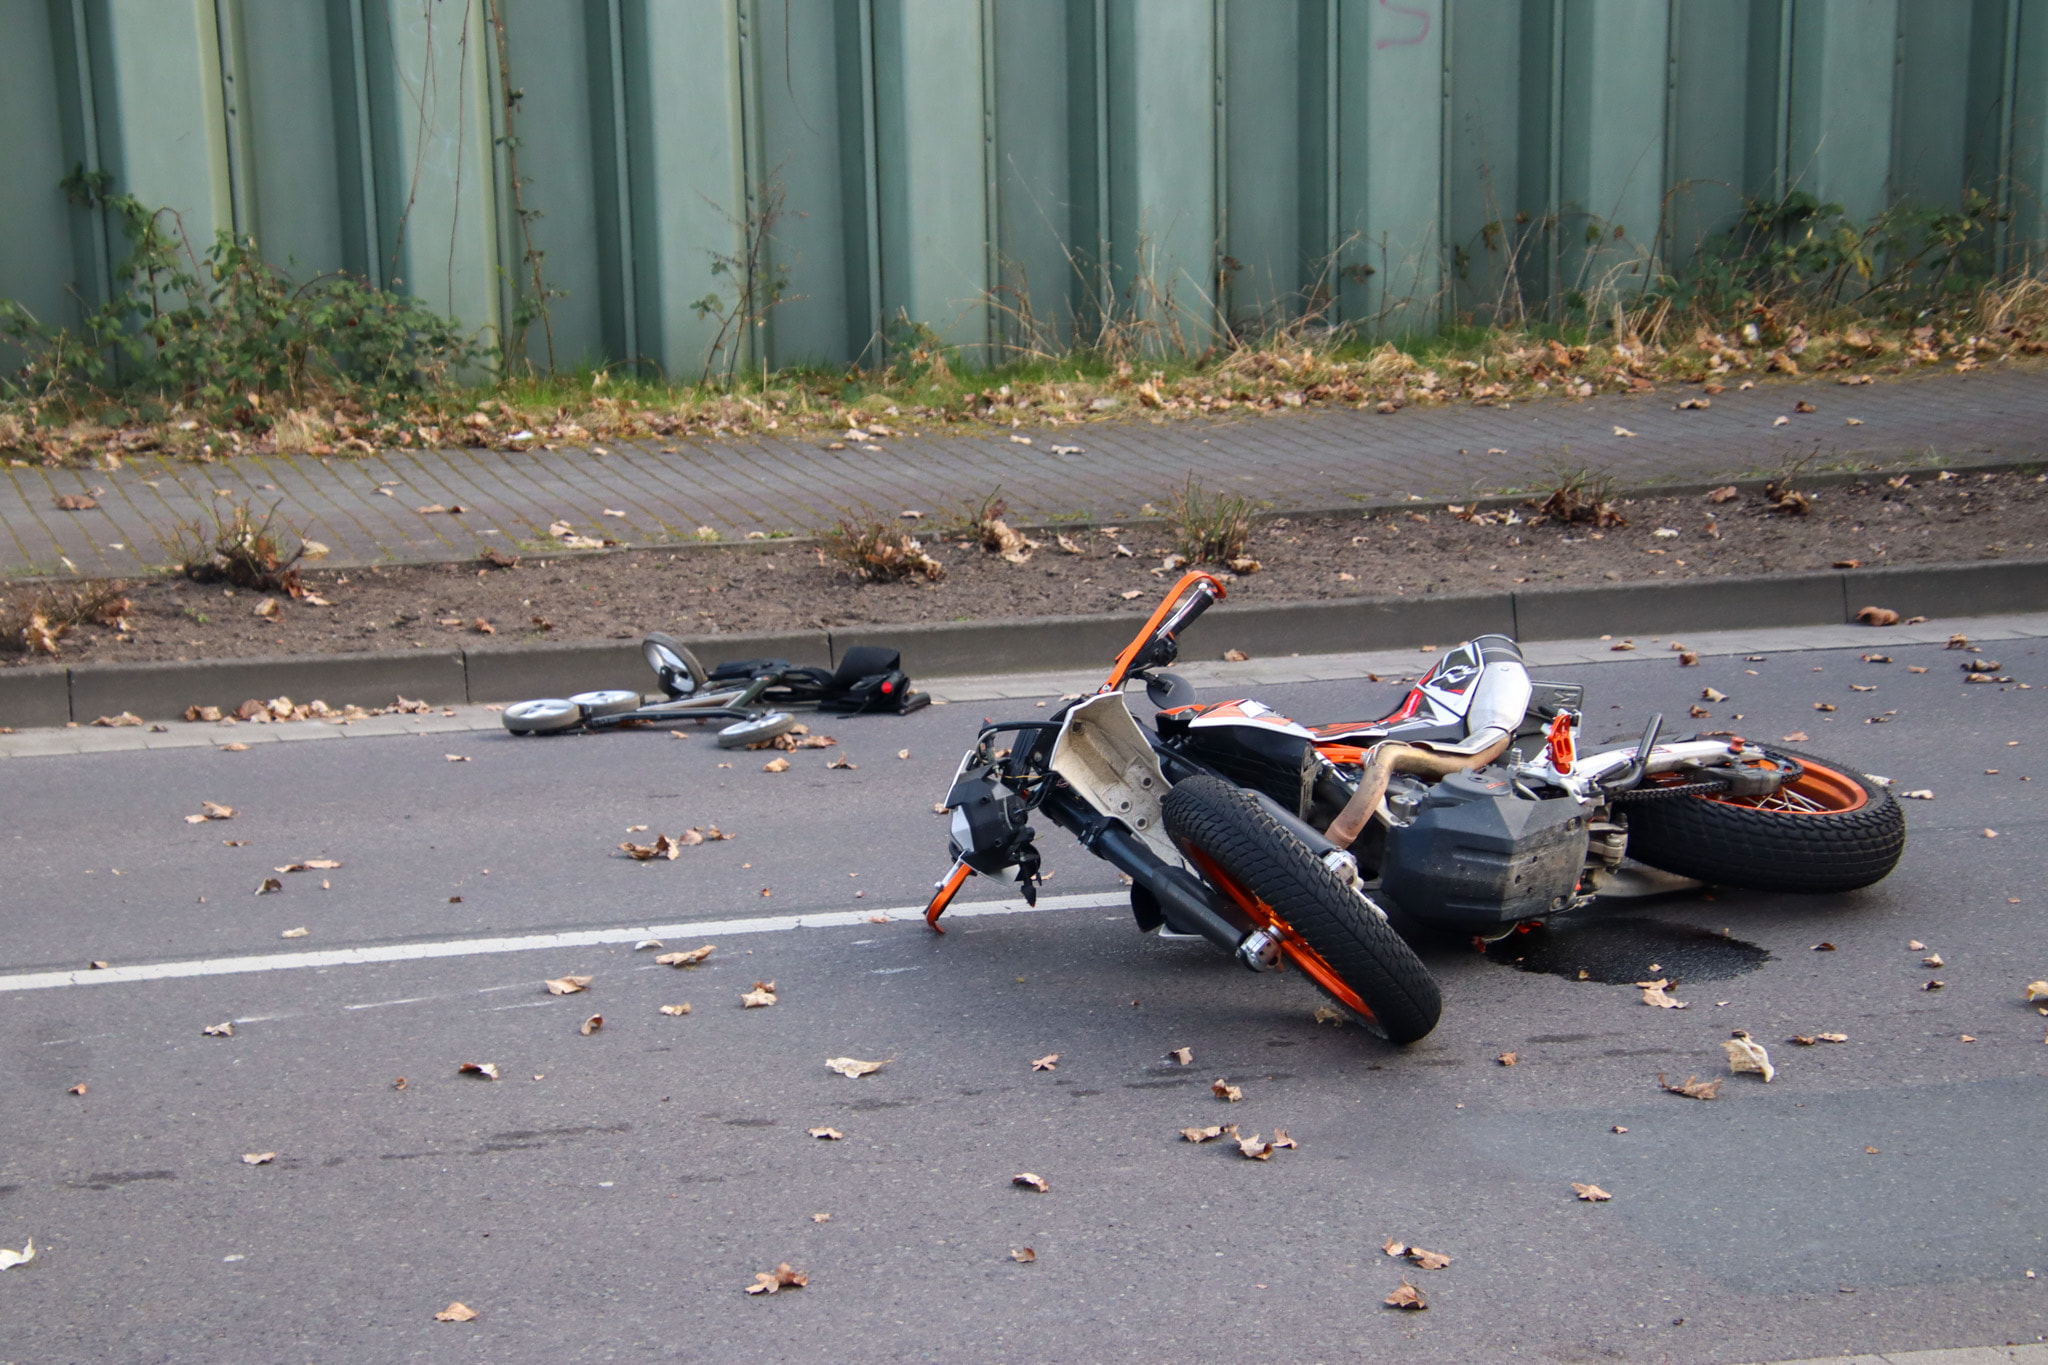 Auf dem Foto ist ein auf der Straße liegendes Motorrad zu sehen, das offensichtlich bei einem Unfall beschädigt wurde.